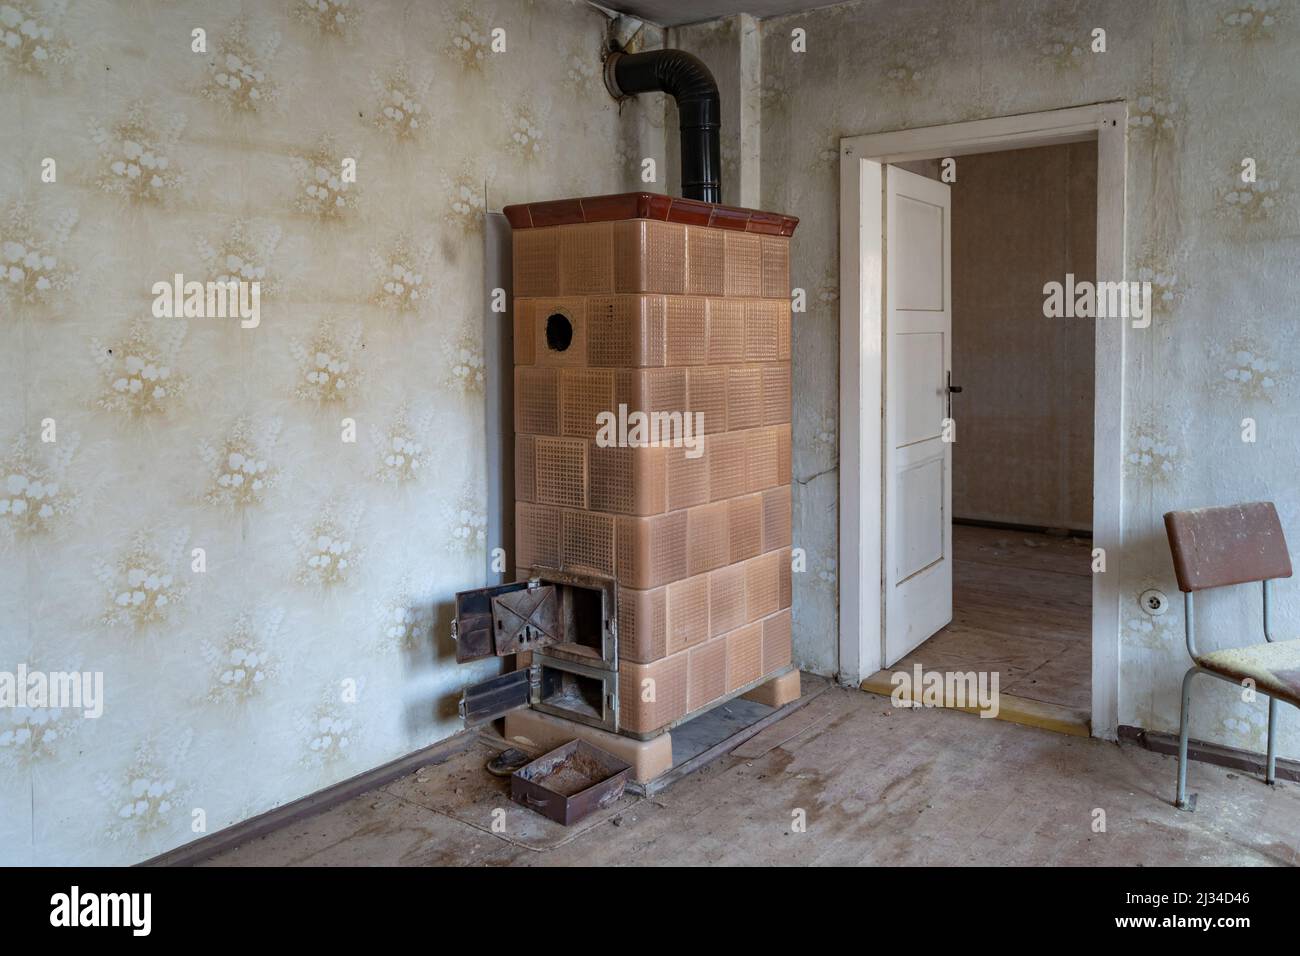 Ein alter Kachelofen in einem Mehrbettzimmer in Ostdeutschland. Verlassene Stelle in einem alten Gebäude. Vintage Innenarchitektur eines verwitterten Hauses. Stockfoto